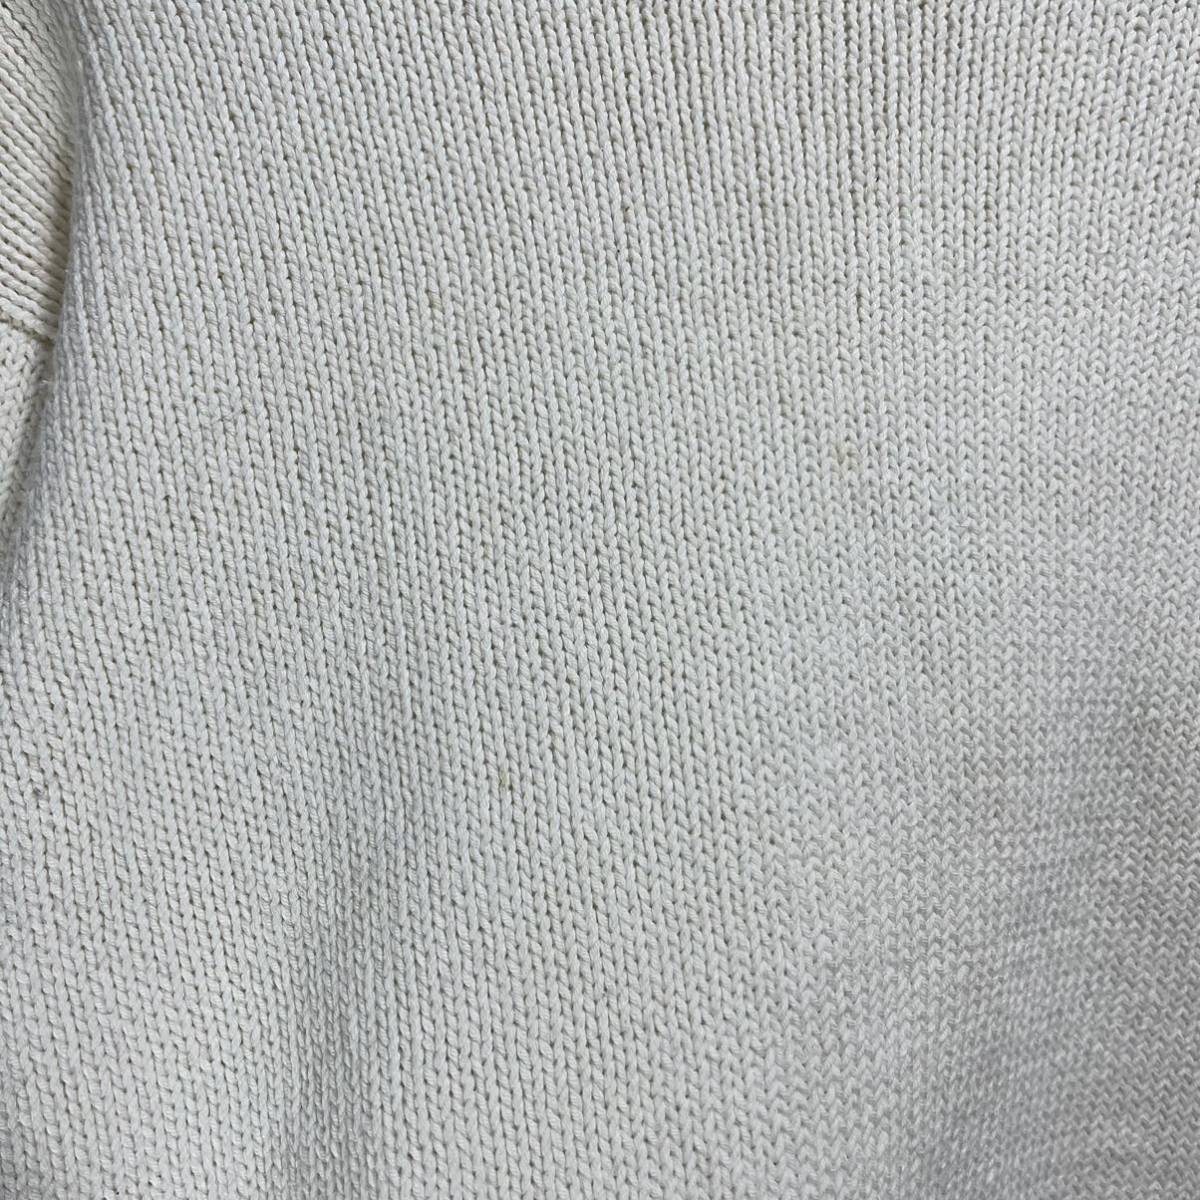 ■ ビンテージ BANANA REPUBLIC バナリパ 無地 コットン ニット セーター サイズS ホワイト アメカジ ■_画像3